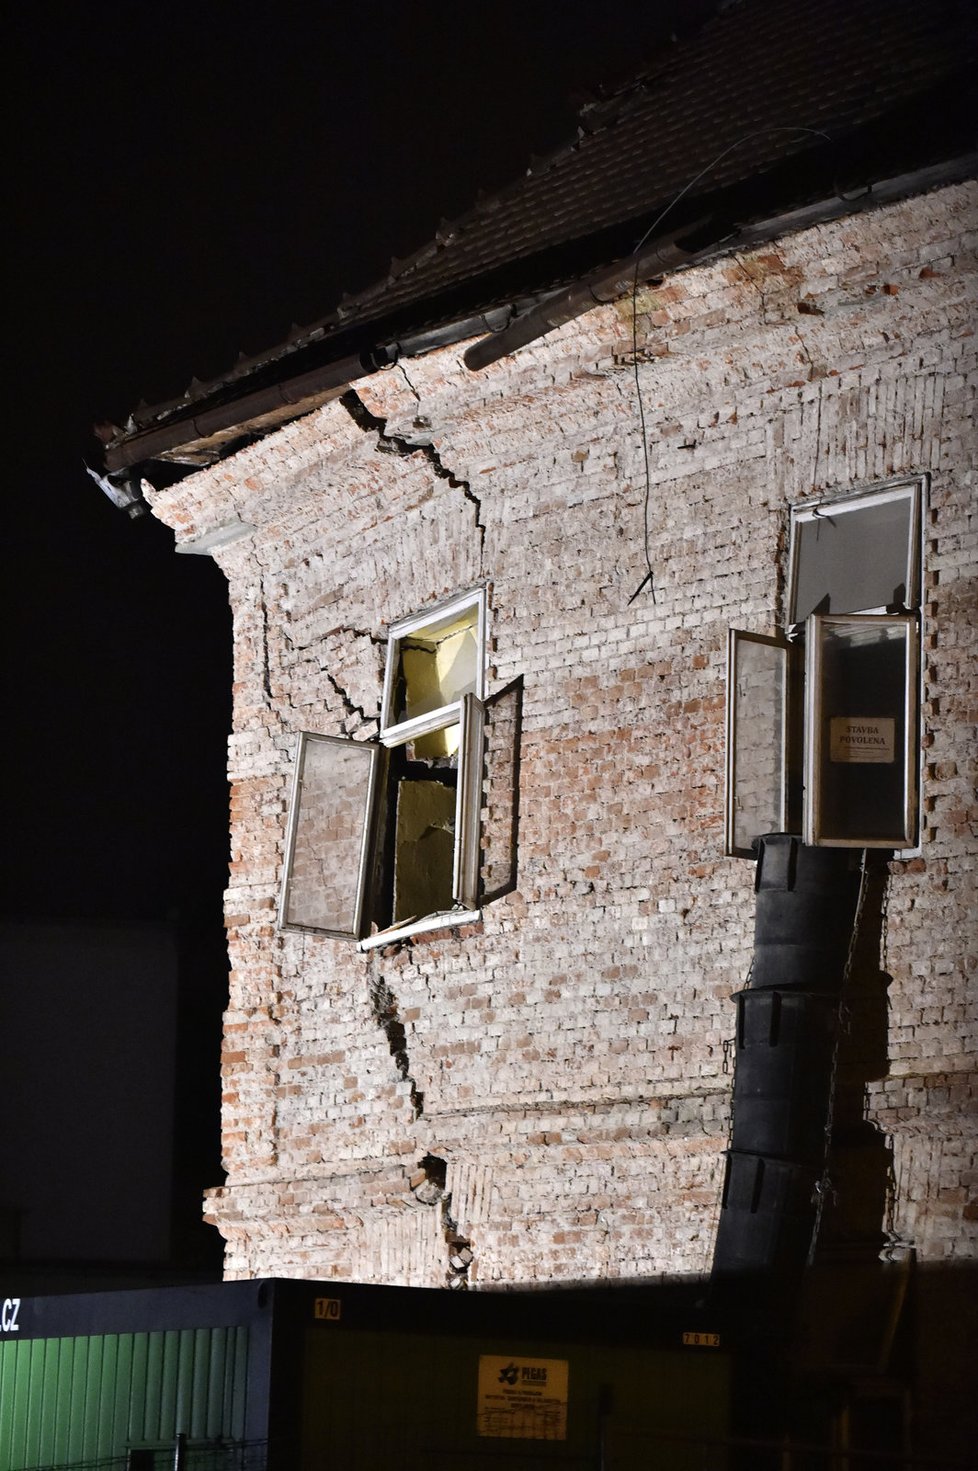 Hasiči strhli část bortícího se domu ve Zlíně: Dům se rozpadá dál